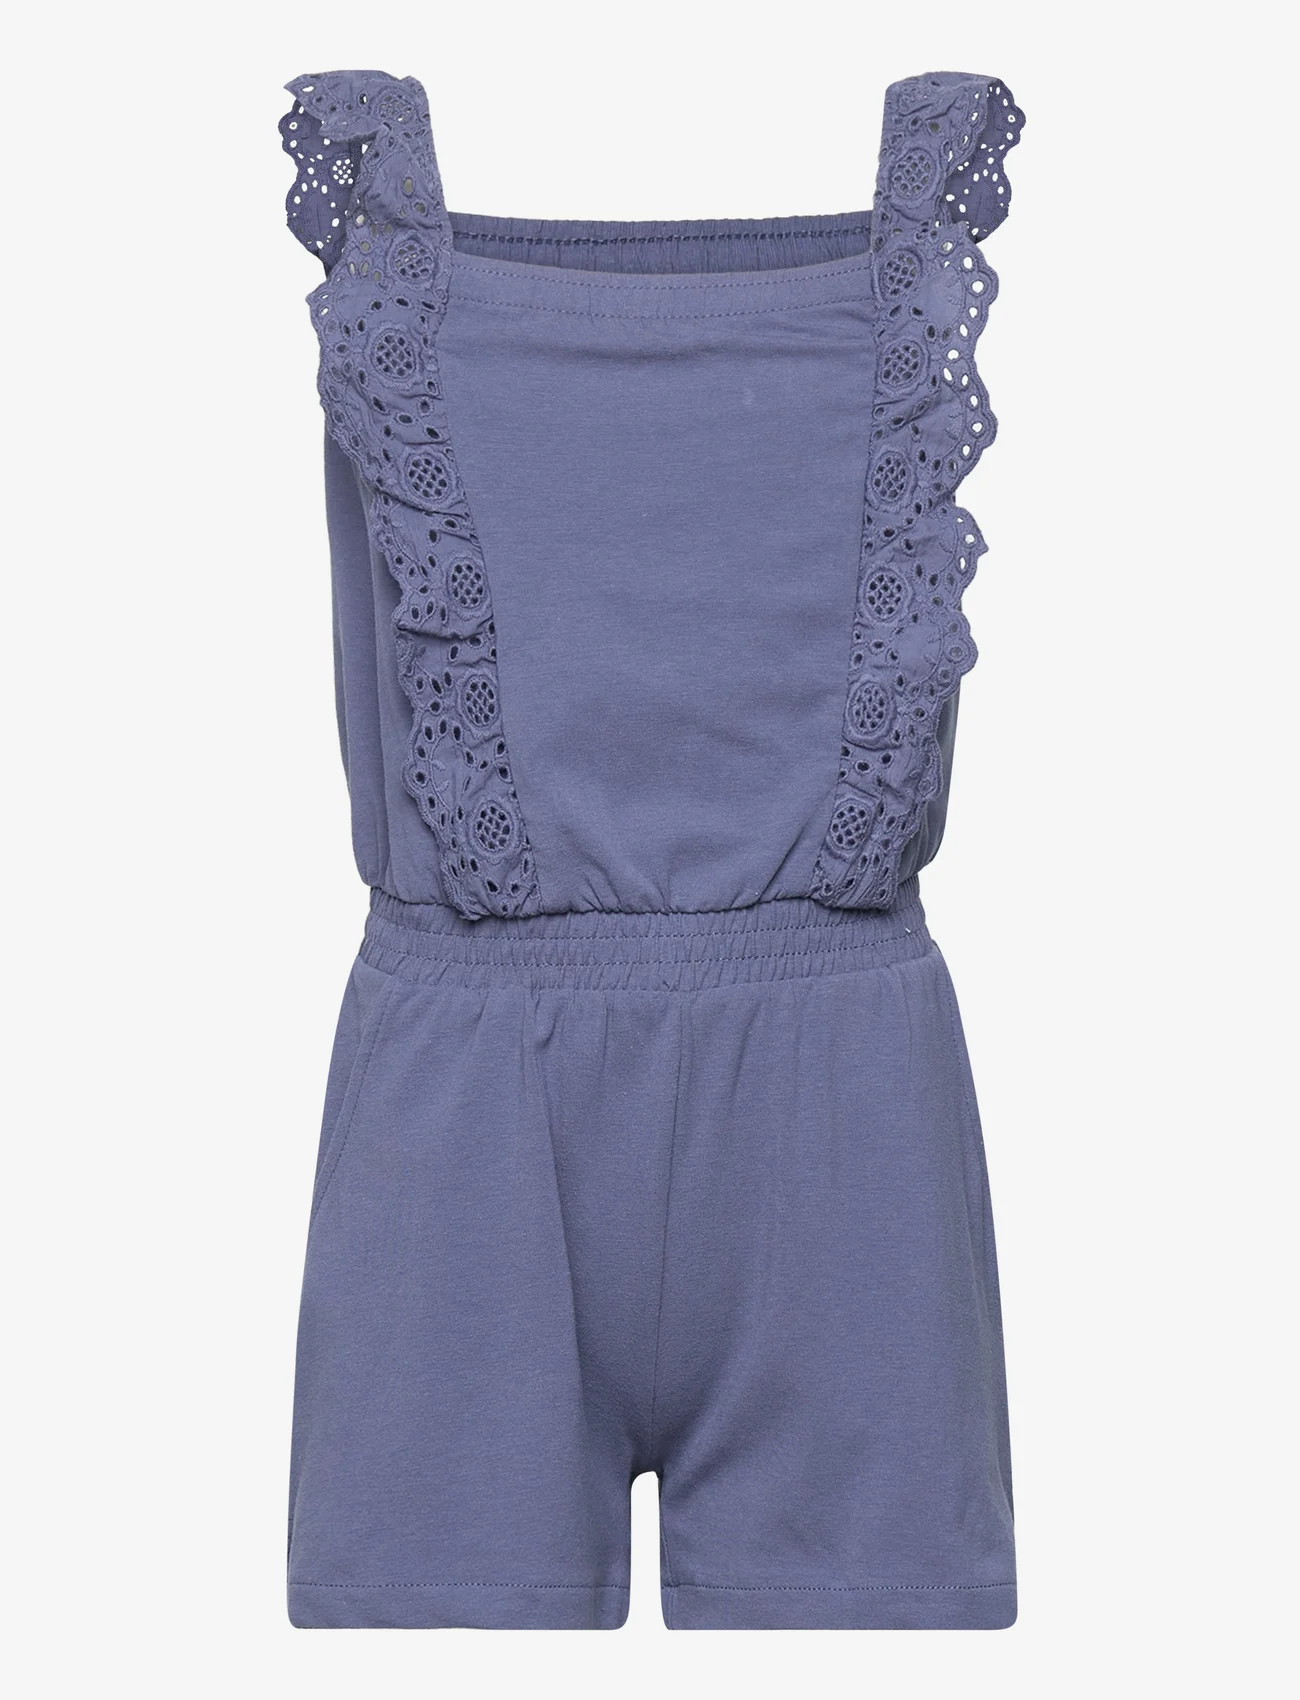 Creamie - Jumpsuit Lace - summer savings - vintage indigo - 0